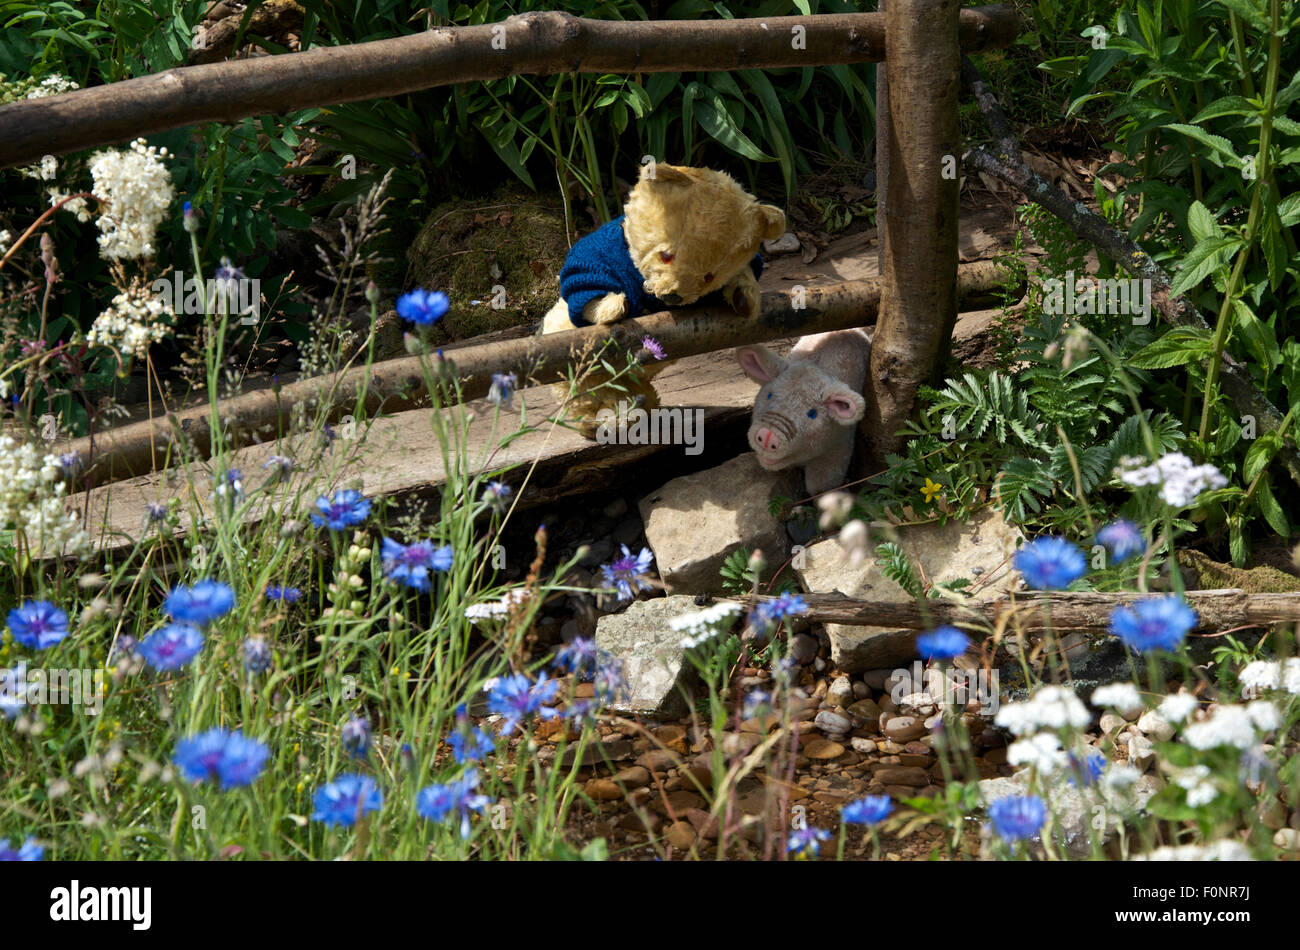 "Winnie the Pooh" beginnt seine Reise', ein Garten von Botanica Welt Entdeckungen gefördert, an der RHS Hampton Court Palace Flower Show. Stockfoto